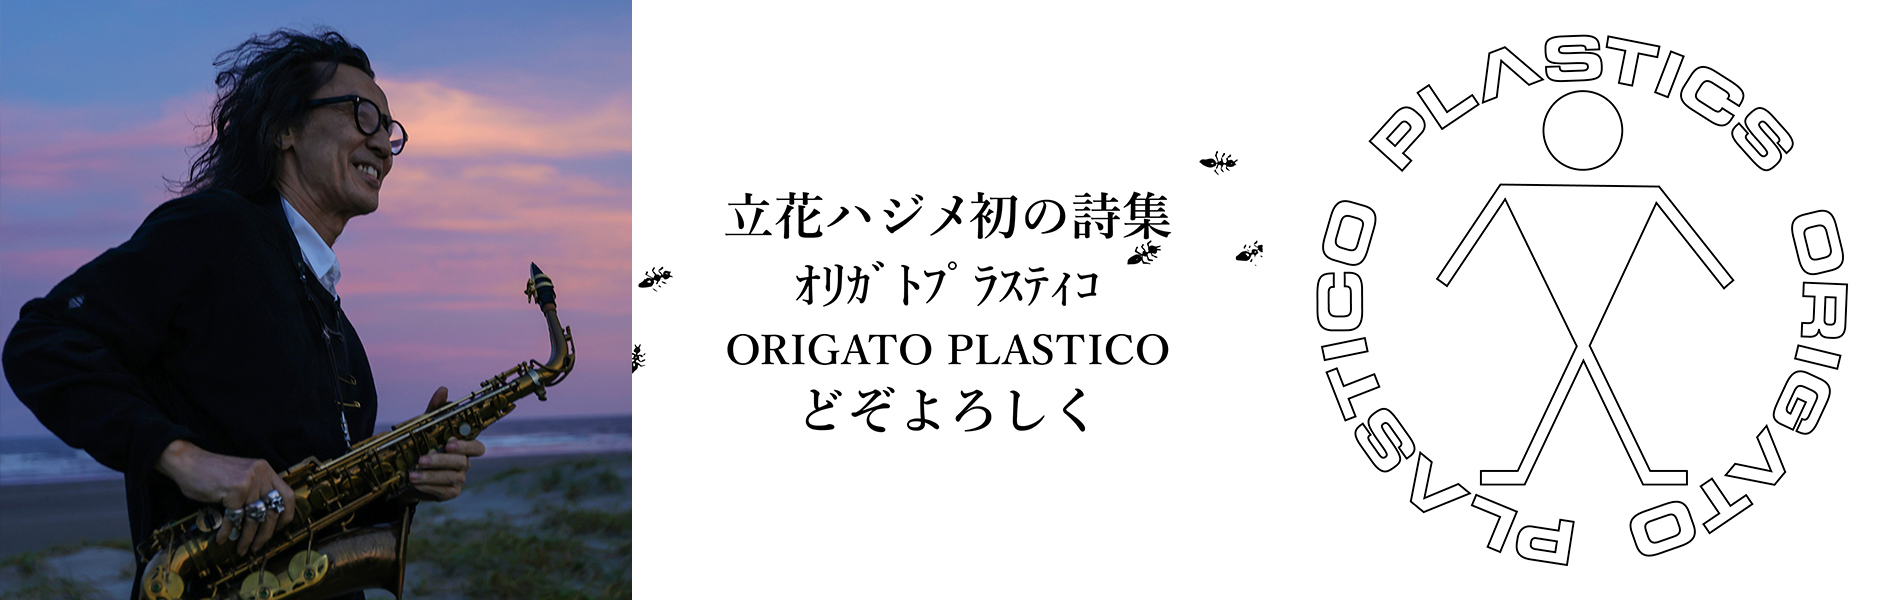 立花ハジメ詩集『オリガト プラスティコ（ORIGATO PLASTICO）』